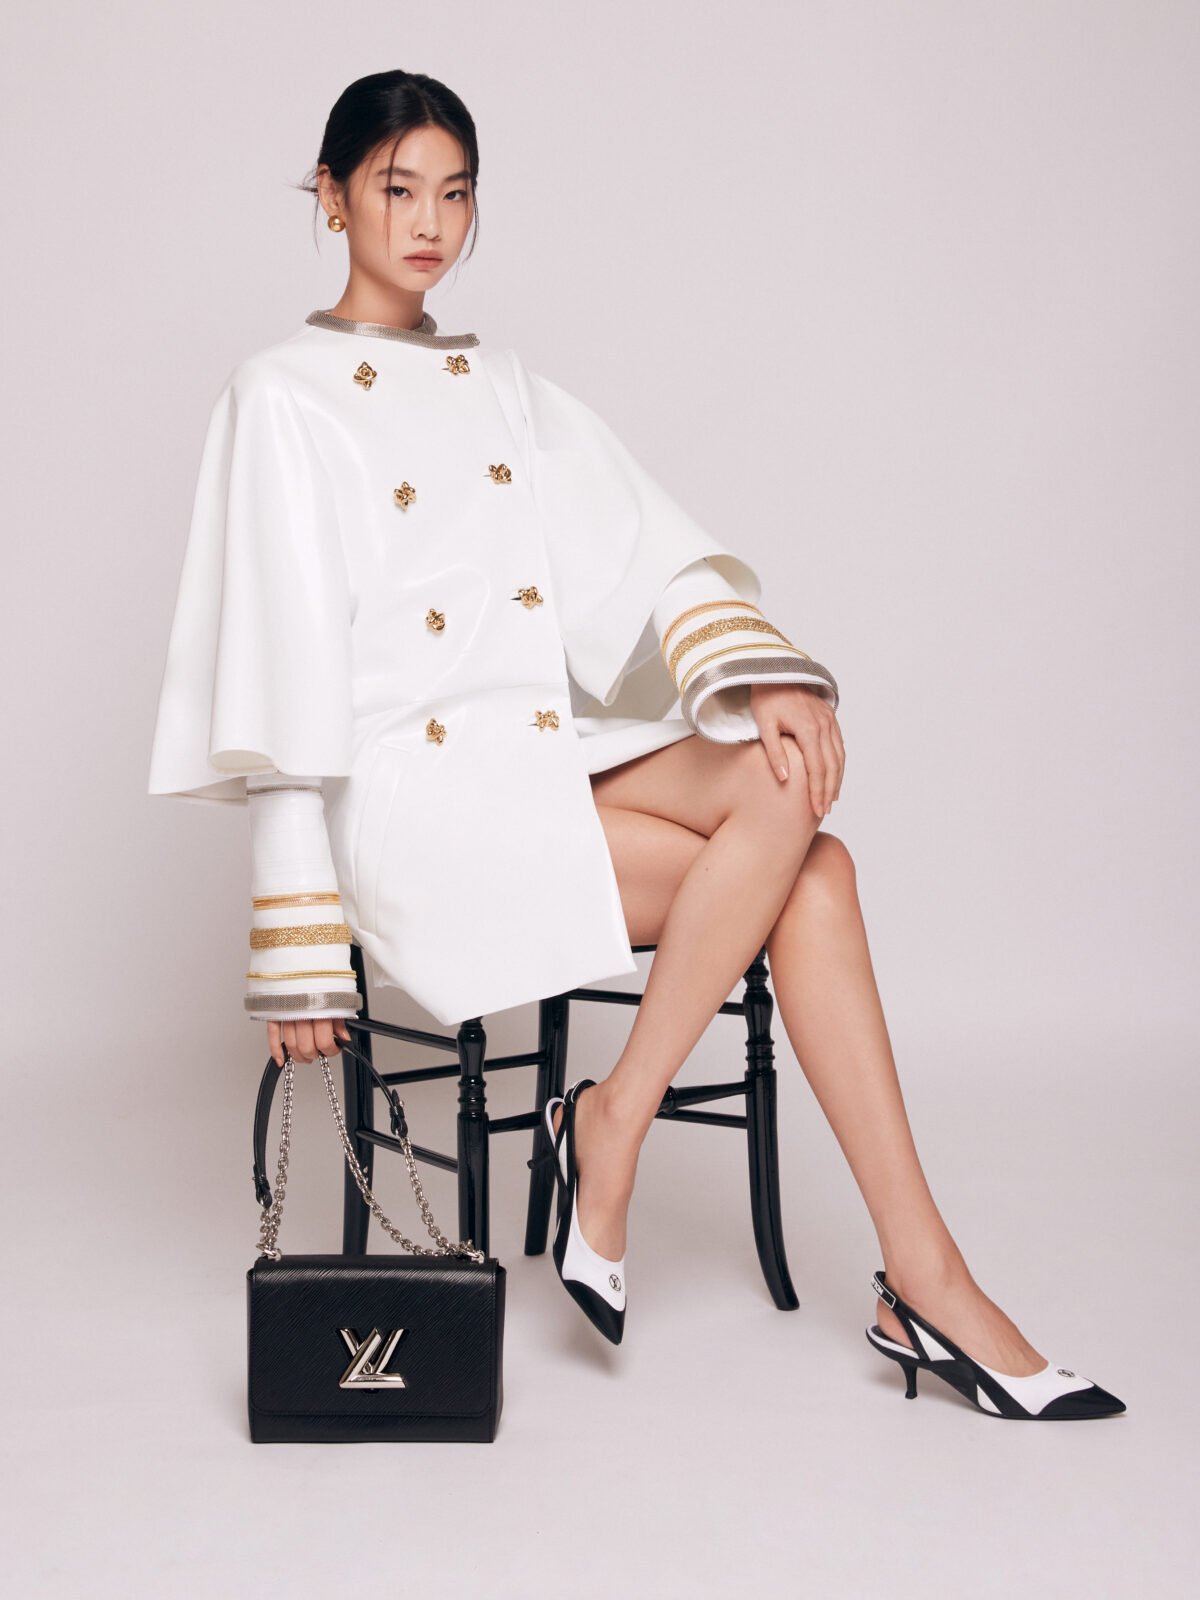 Léa Seydoux, HoYeon Jung & More Take Paris in Louis Vuitton's Fall